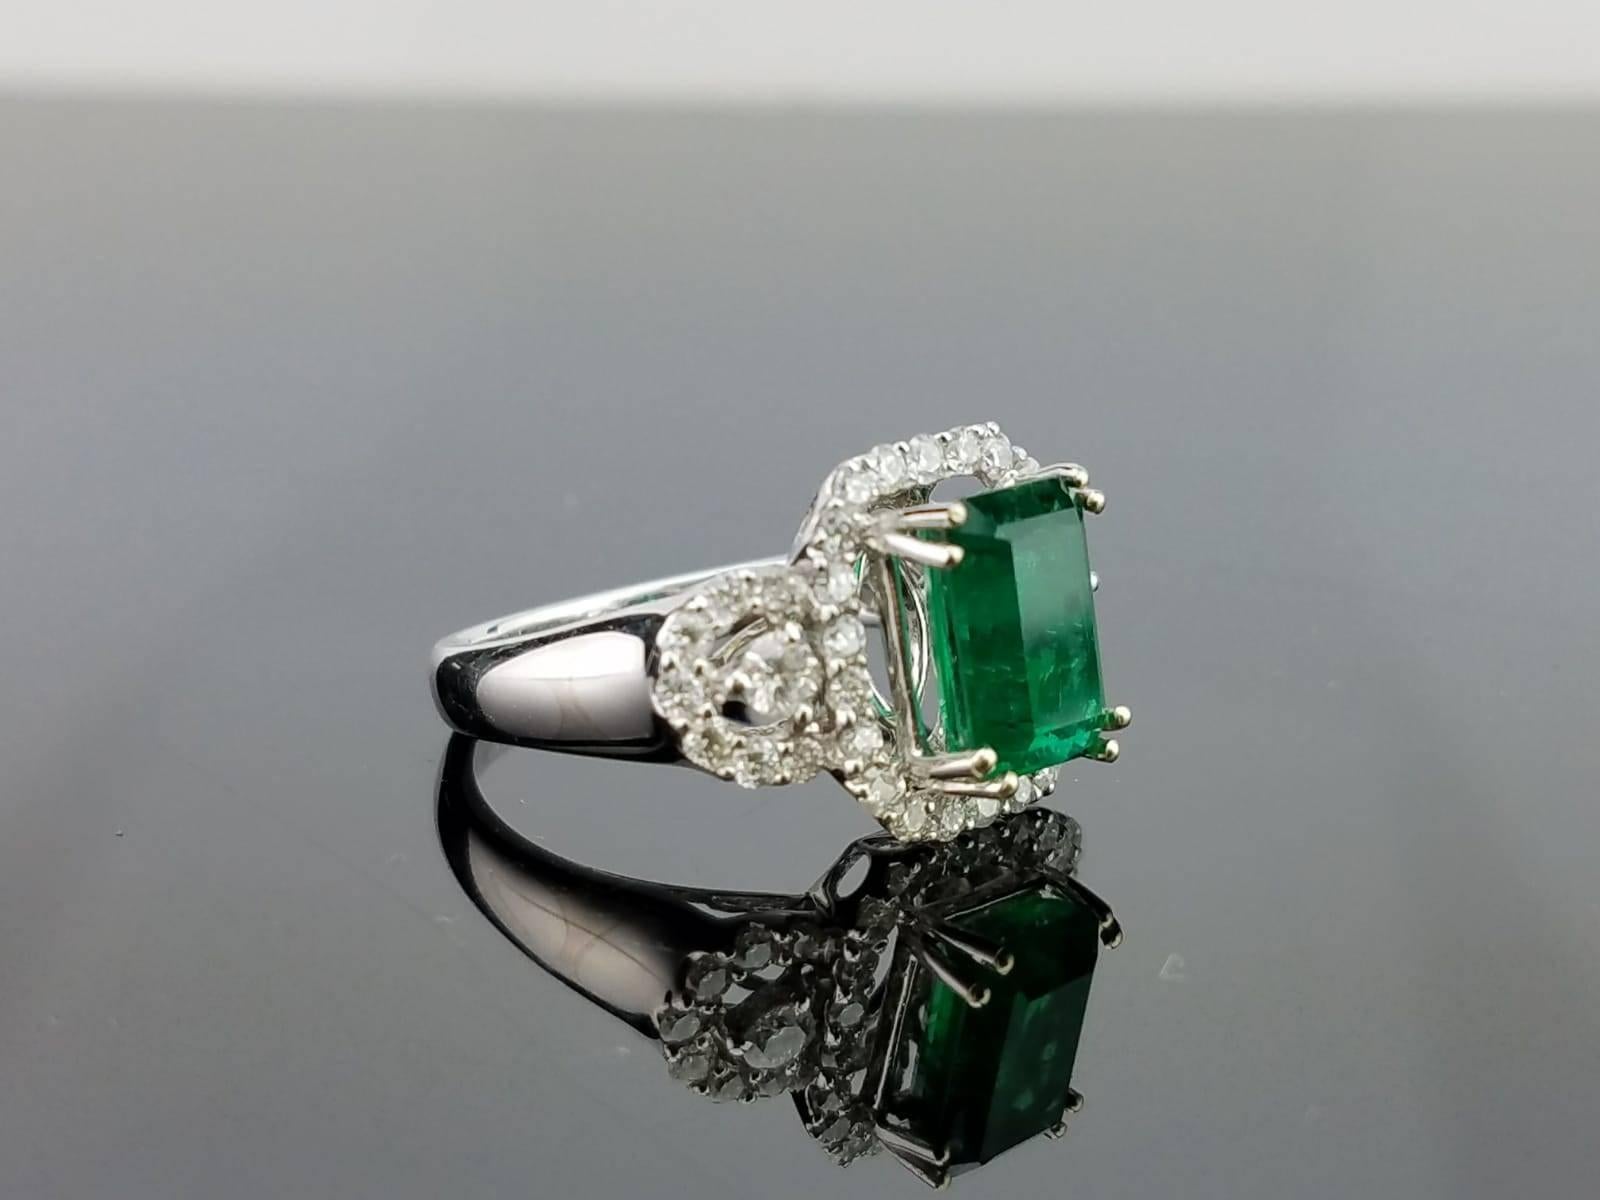 Ein klassischer und eleganter Ring mit einem 2,36 Karat schweren sambischen Smaragd von hoher Qualität und Reinheit in der Mitte und Diamanten, die auf einem 18-karätigen Goldband gefasst sind. 

Details zum Stein: 
Stein: Smaragd
Karatgewicht: 2,36